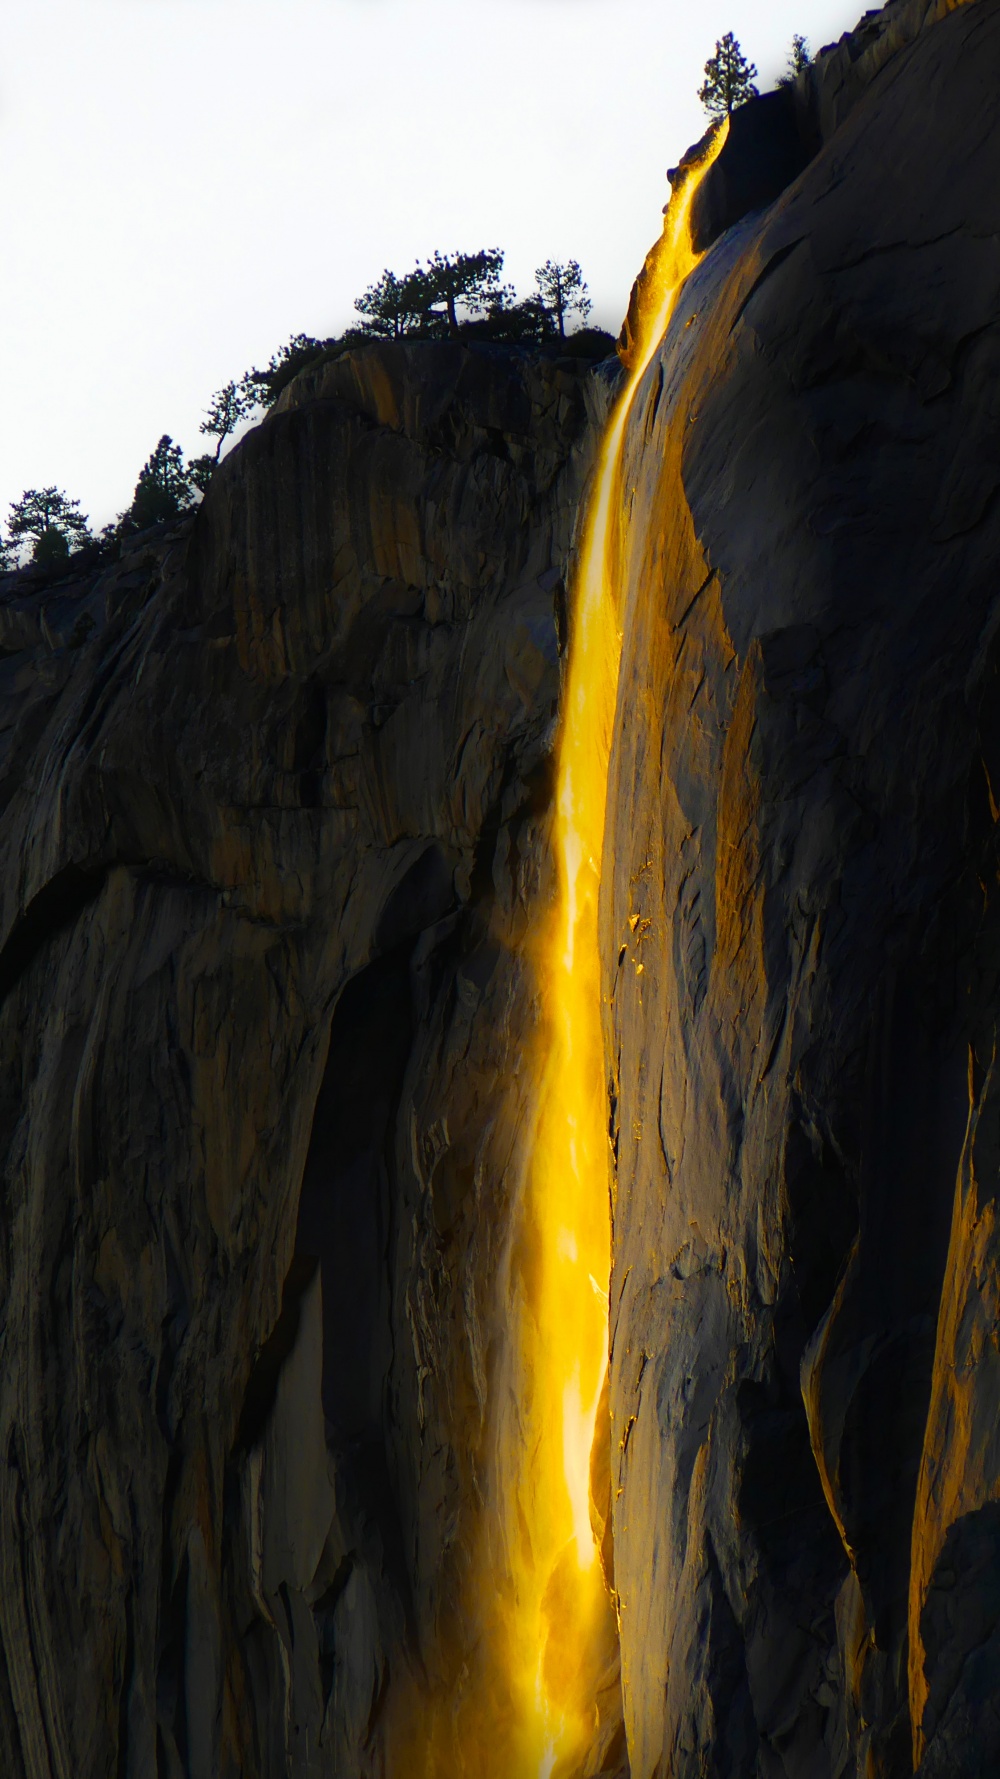  آبشار آتش در هنگام غروب خورشید